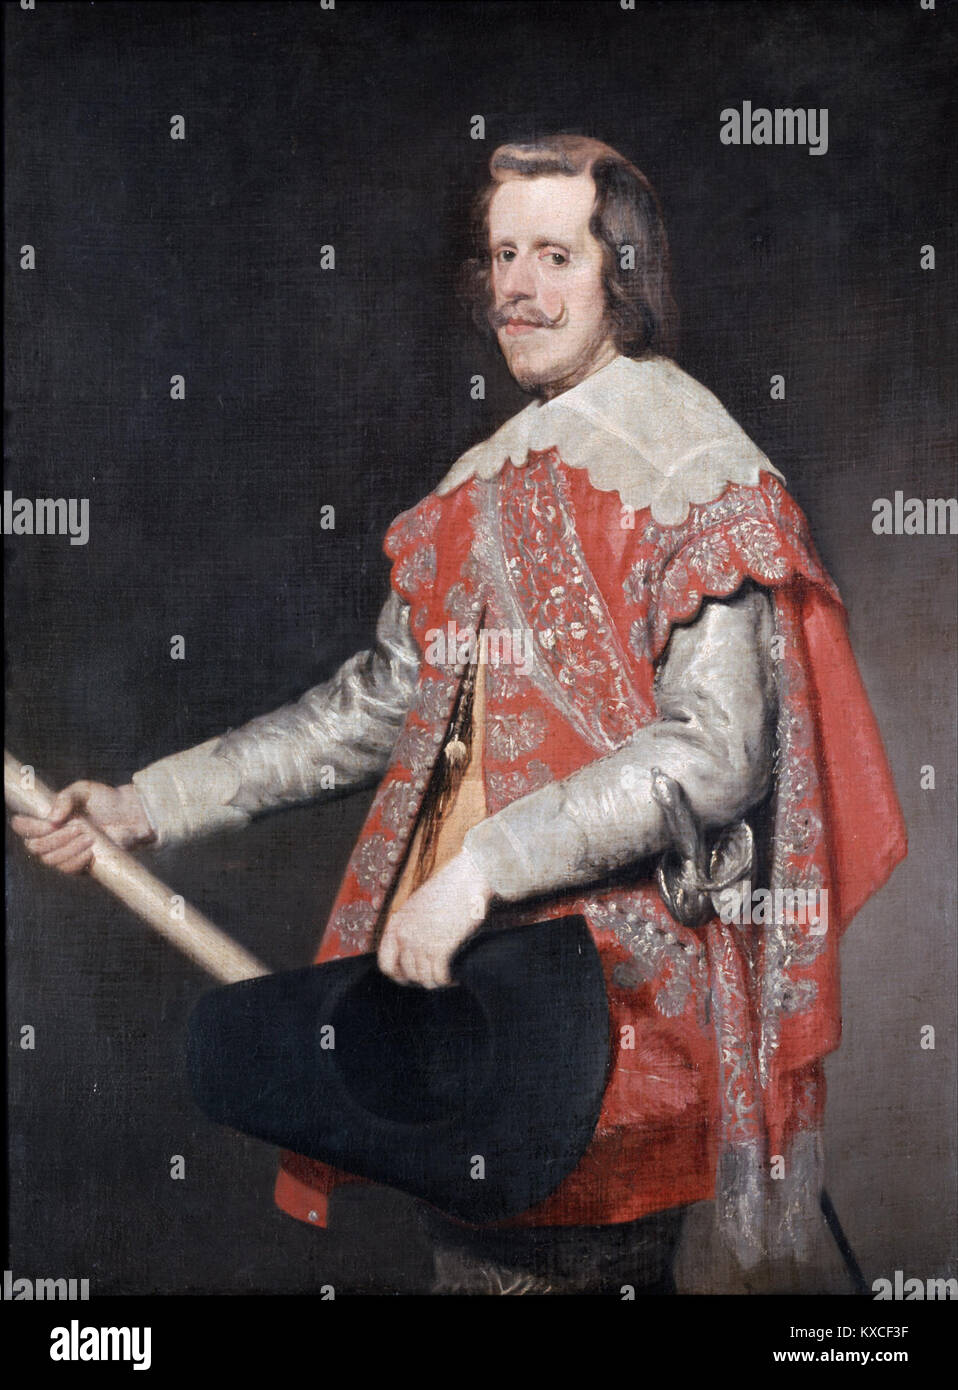 Velázquez, Diego Rodríguez de Silva y - Philip IV, King of Spain - Google Art Project Stock Photo